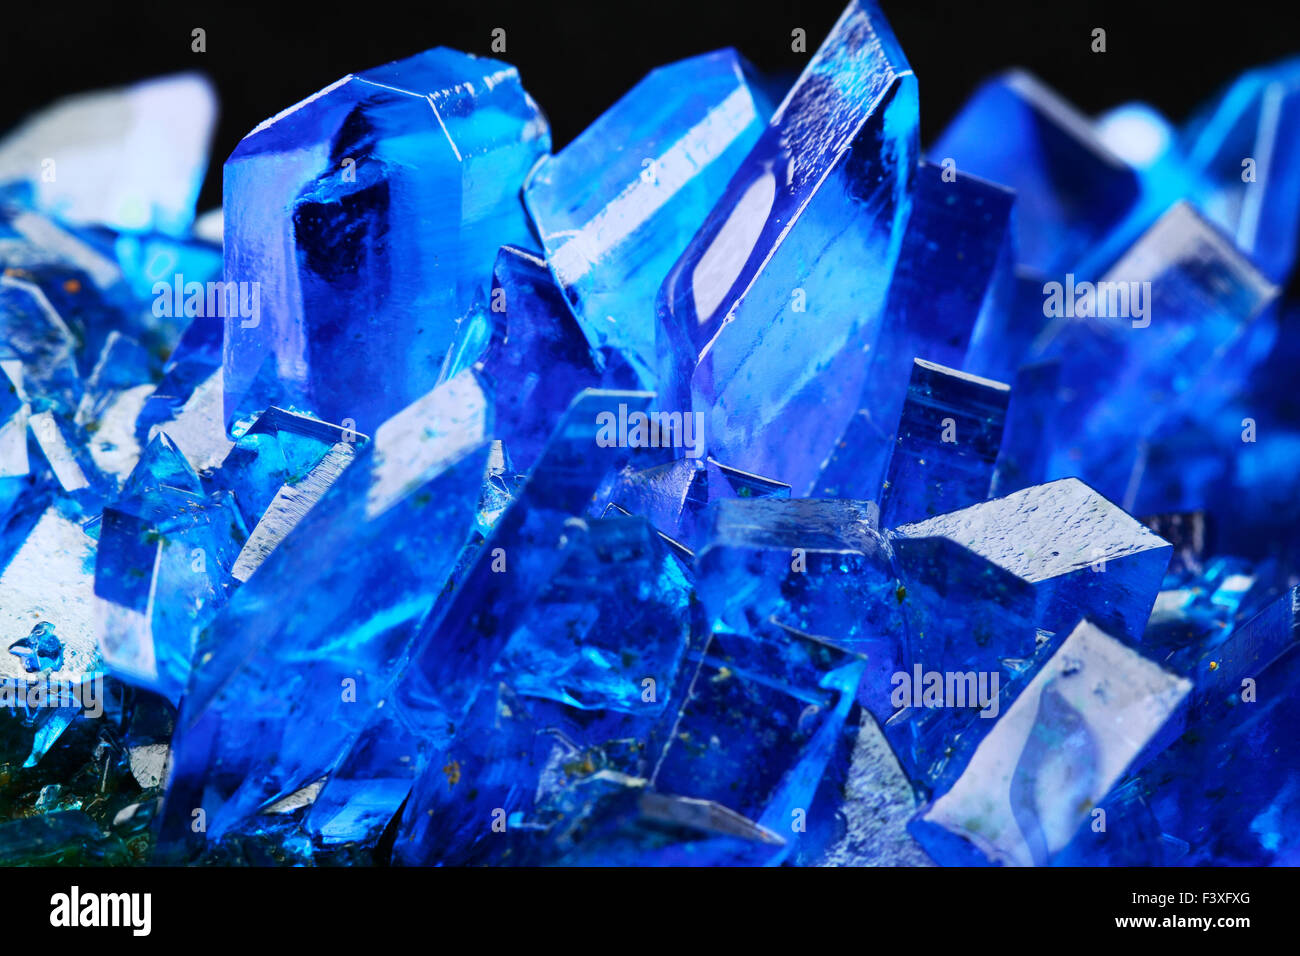 Vetriolo blu immagini e fotografie stock ad alta risoluzione - Alamy